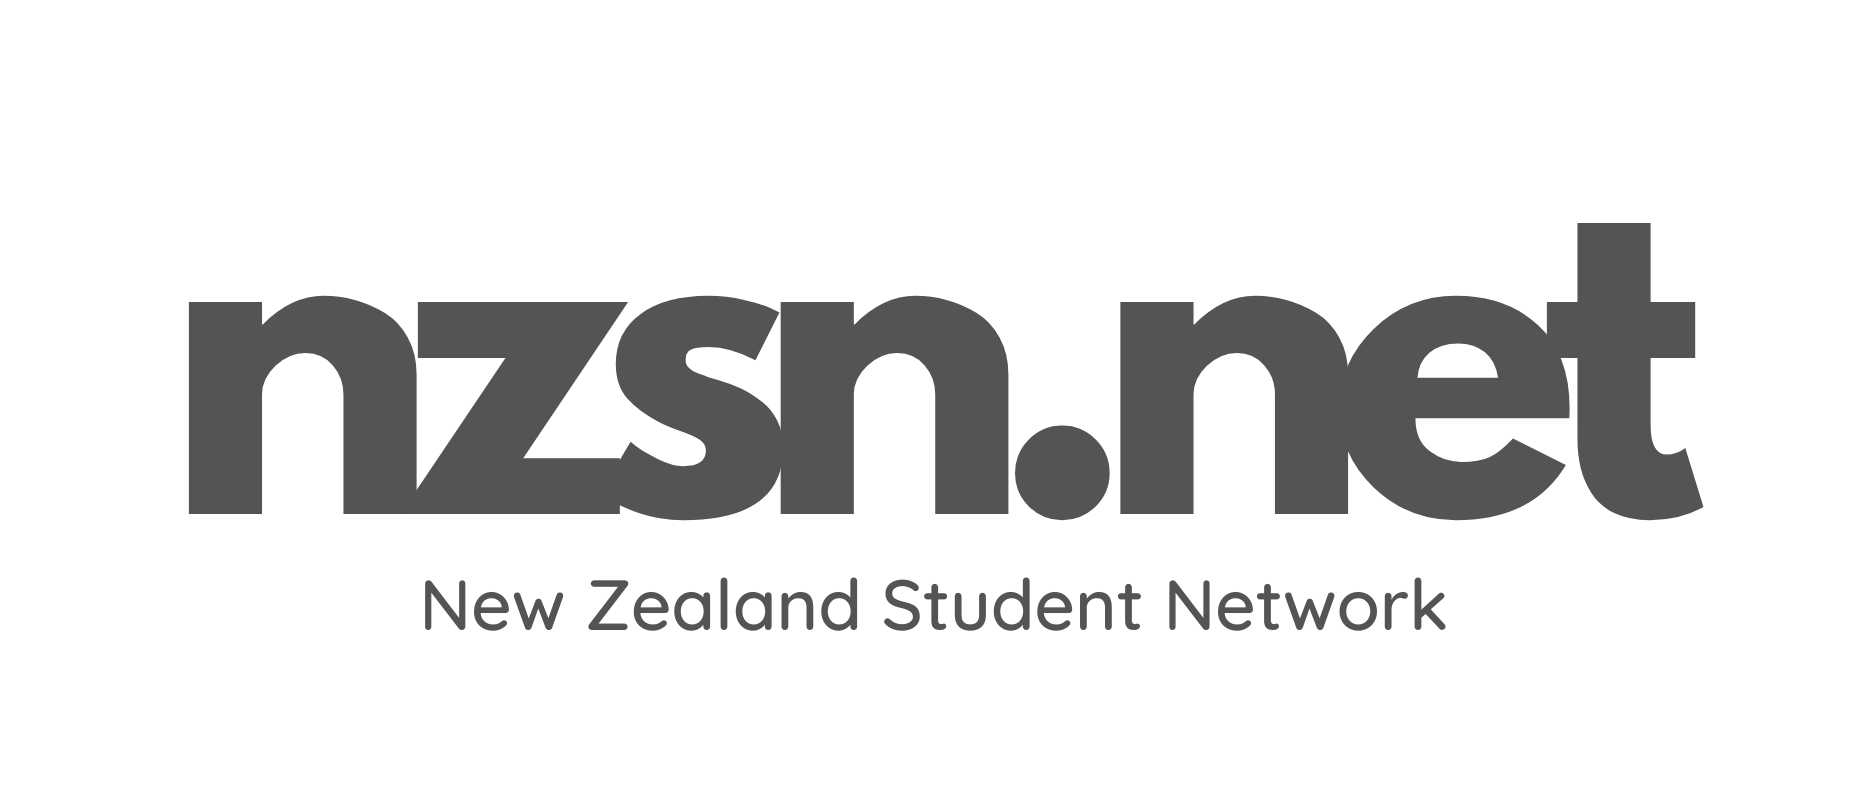 NZSN Logo